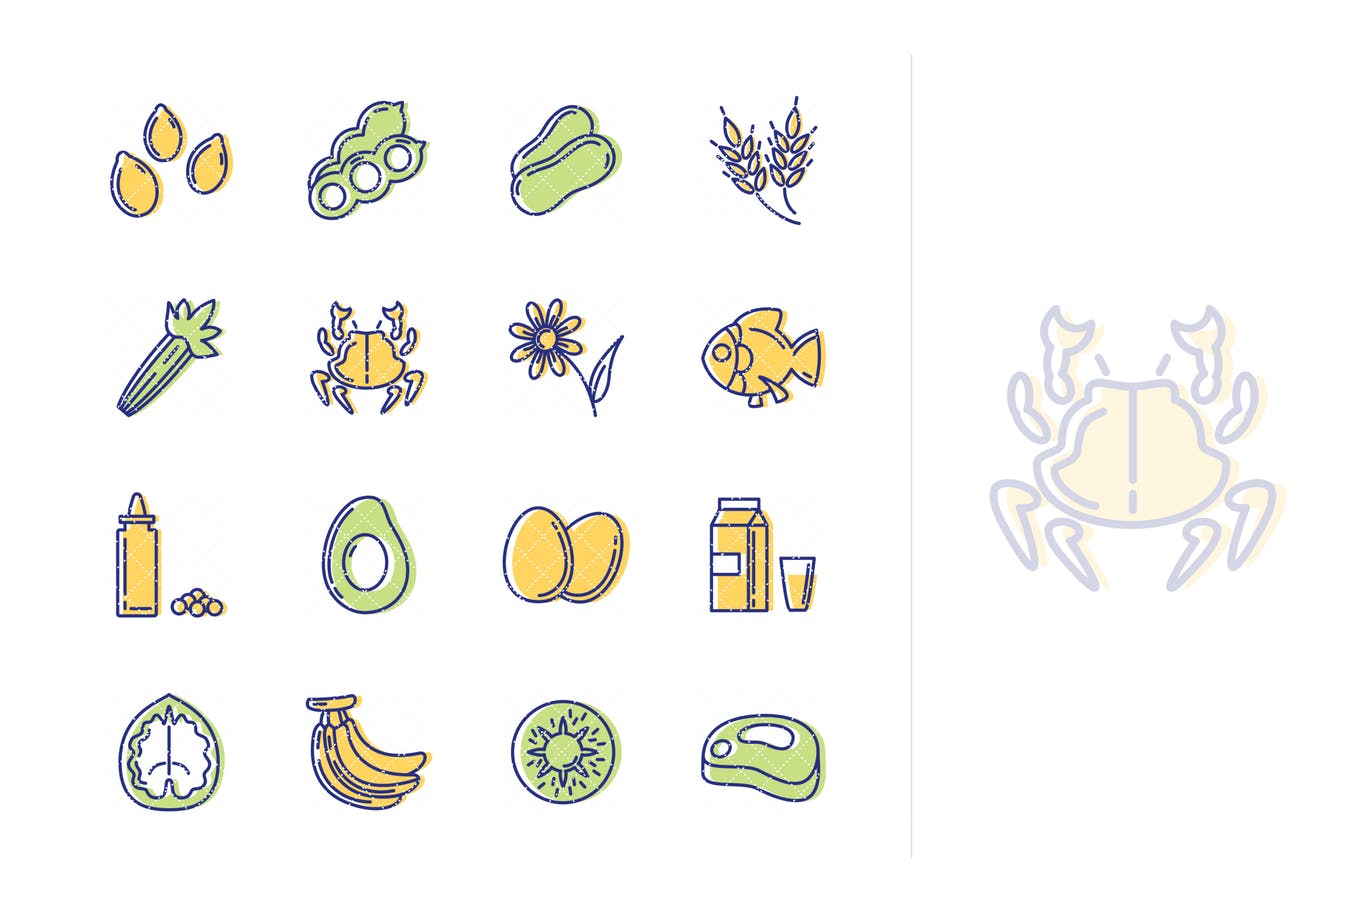 过敏原主题Outline风格素材库精选图标素材 Allergens Icons – Outline Series插图